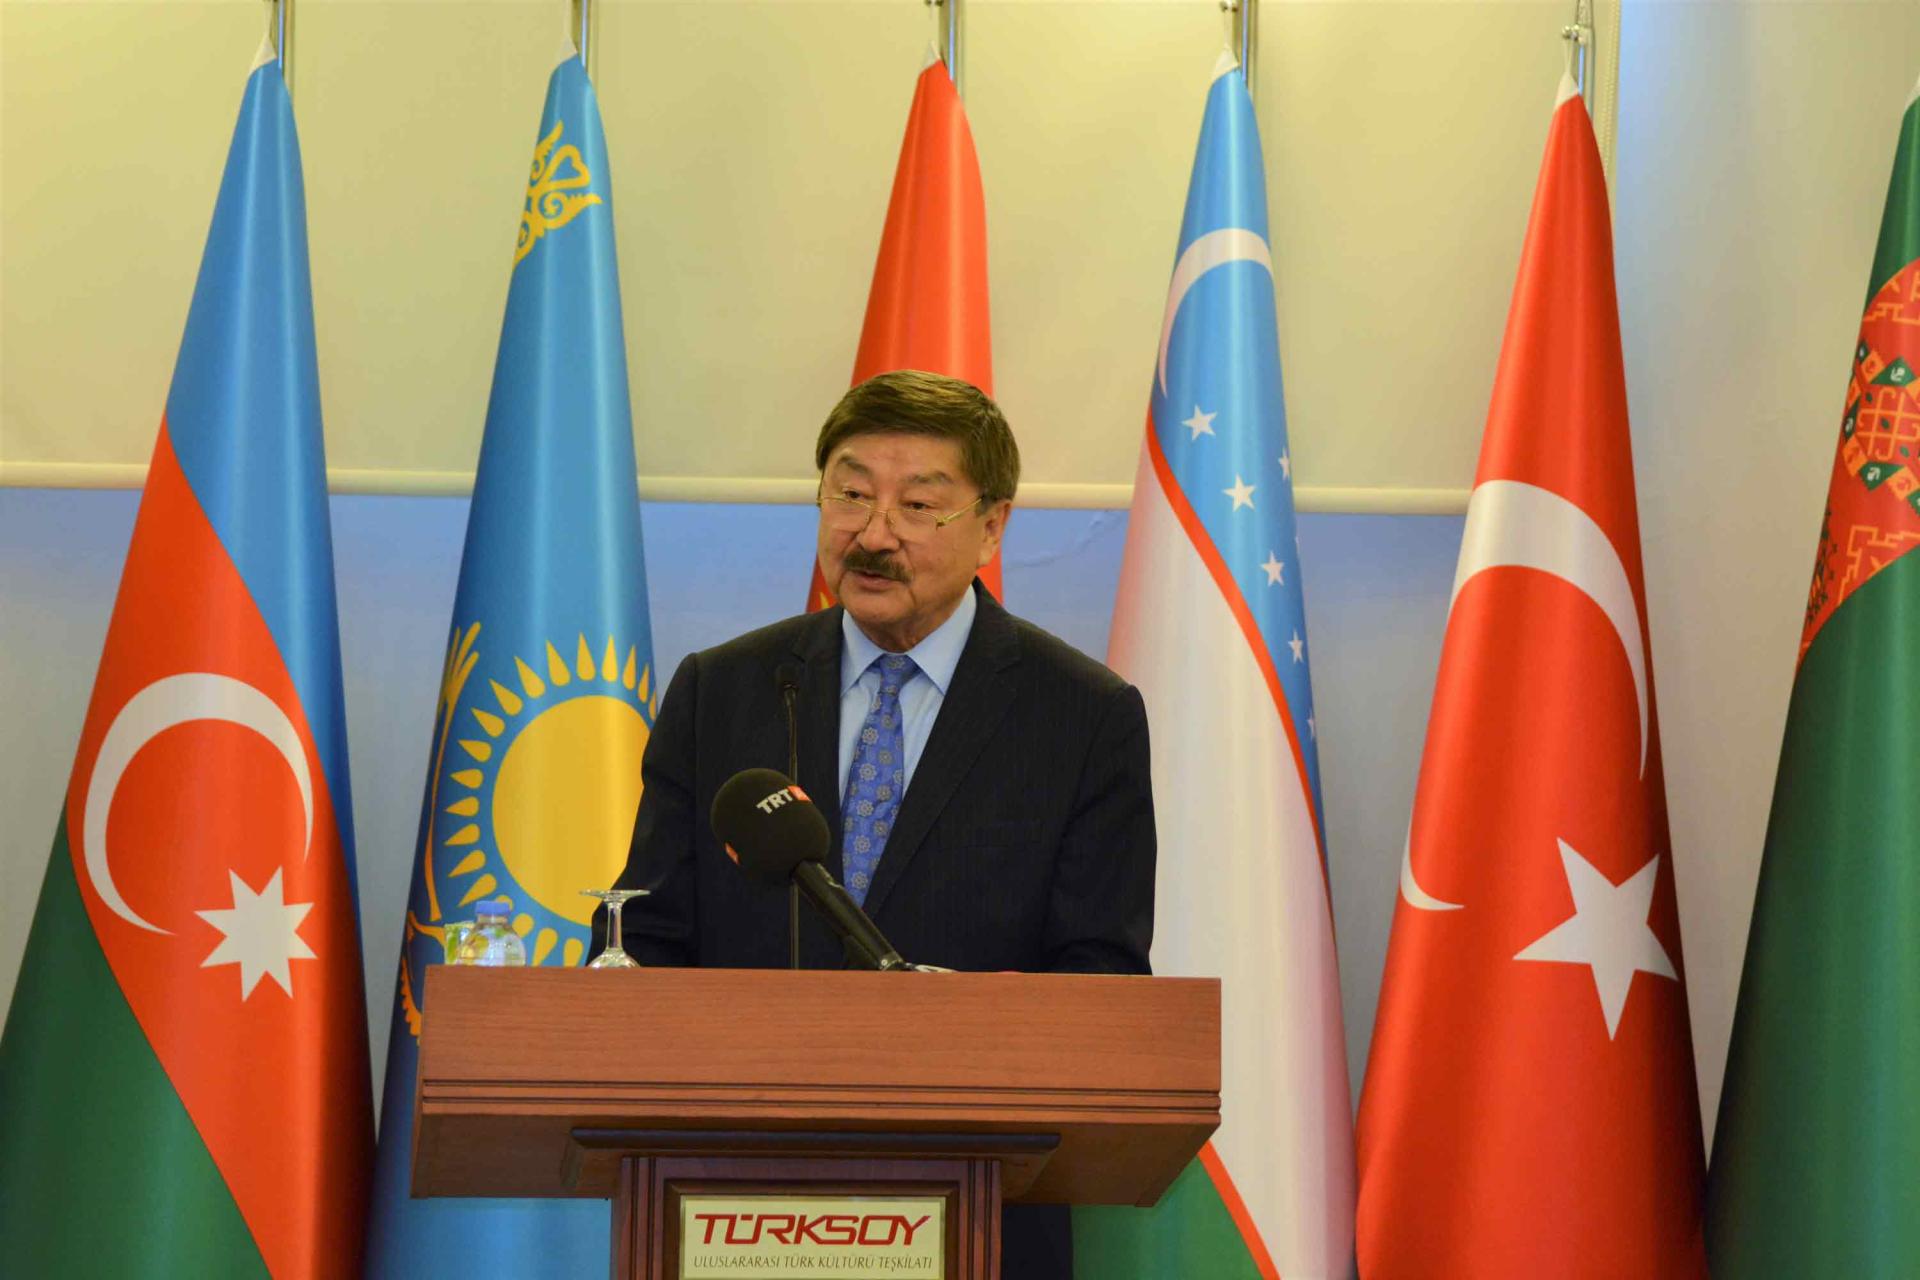 Nabi Avcı'ya Kazakistan Bağımsızlık Madalyası Takdim edildi (Fotoğraf)